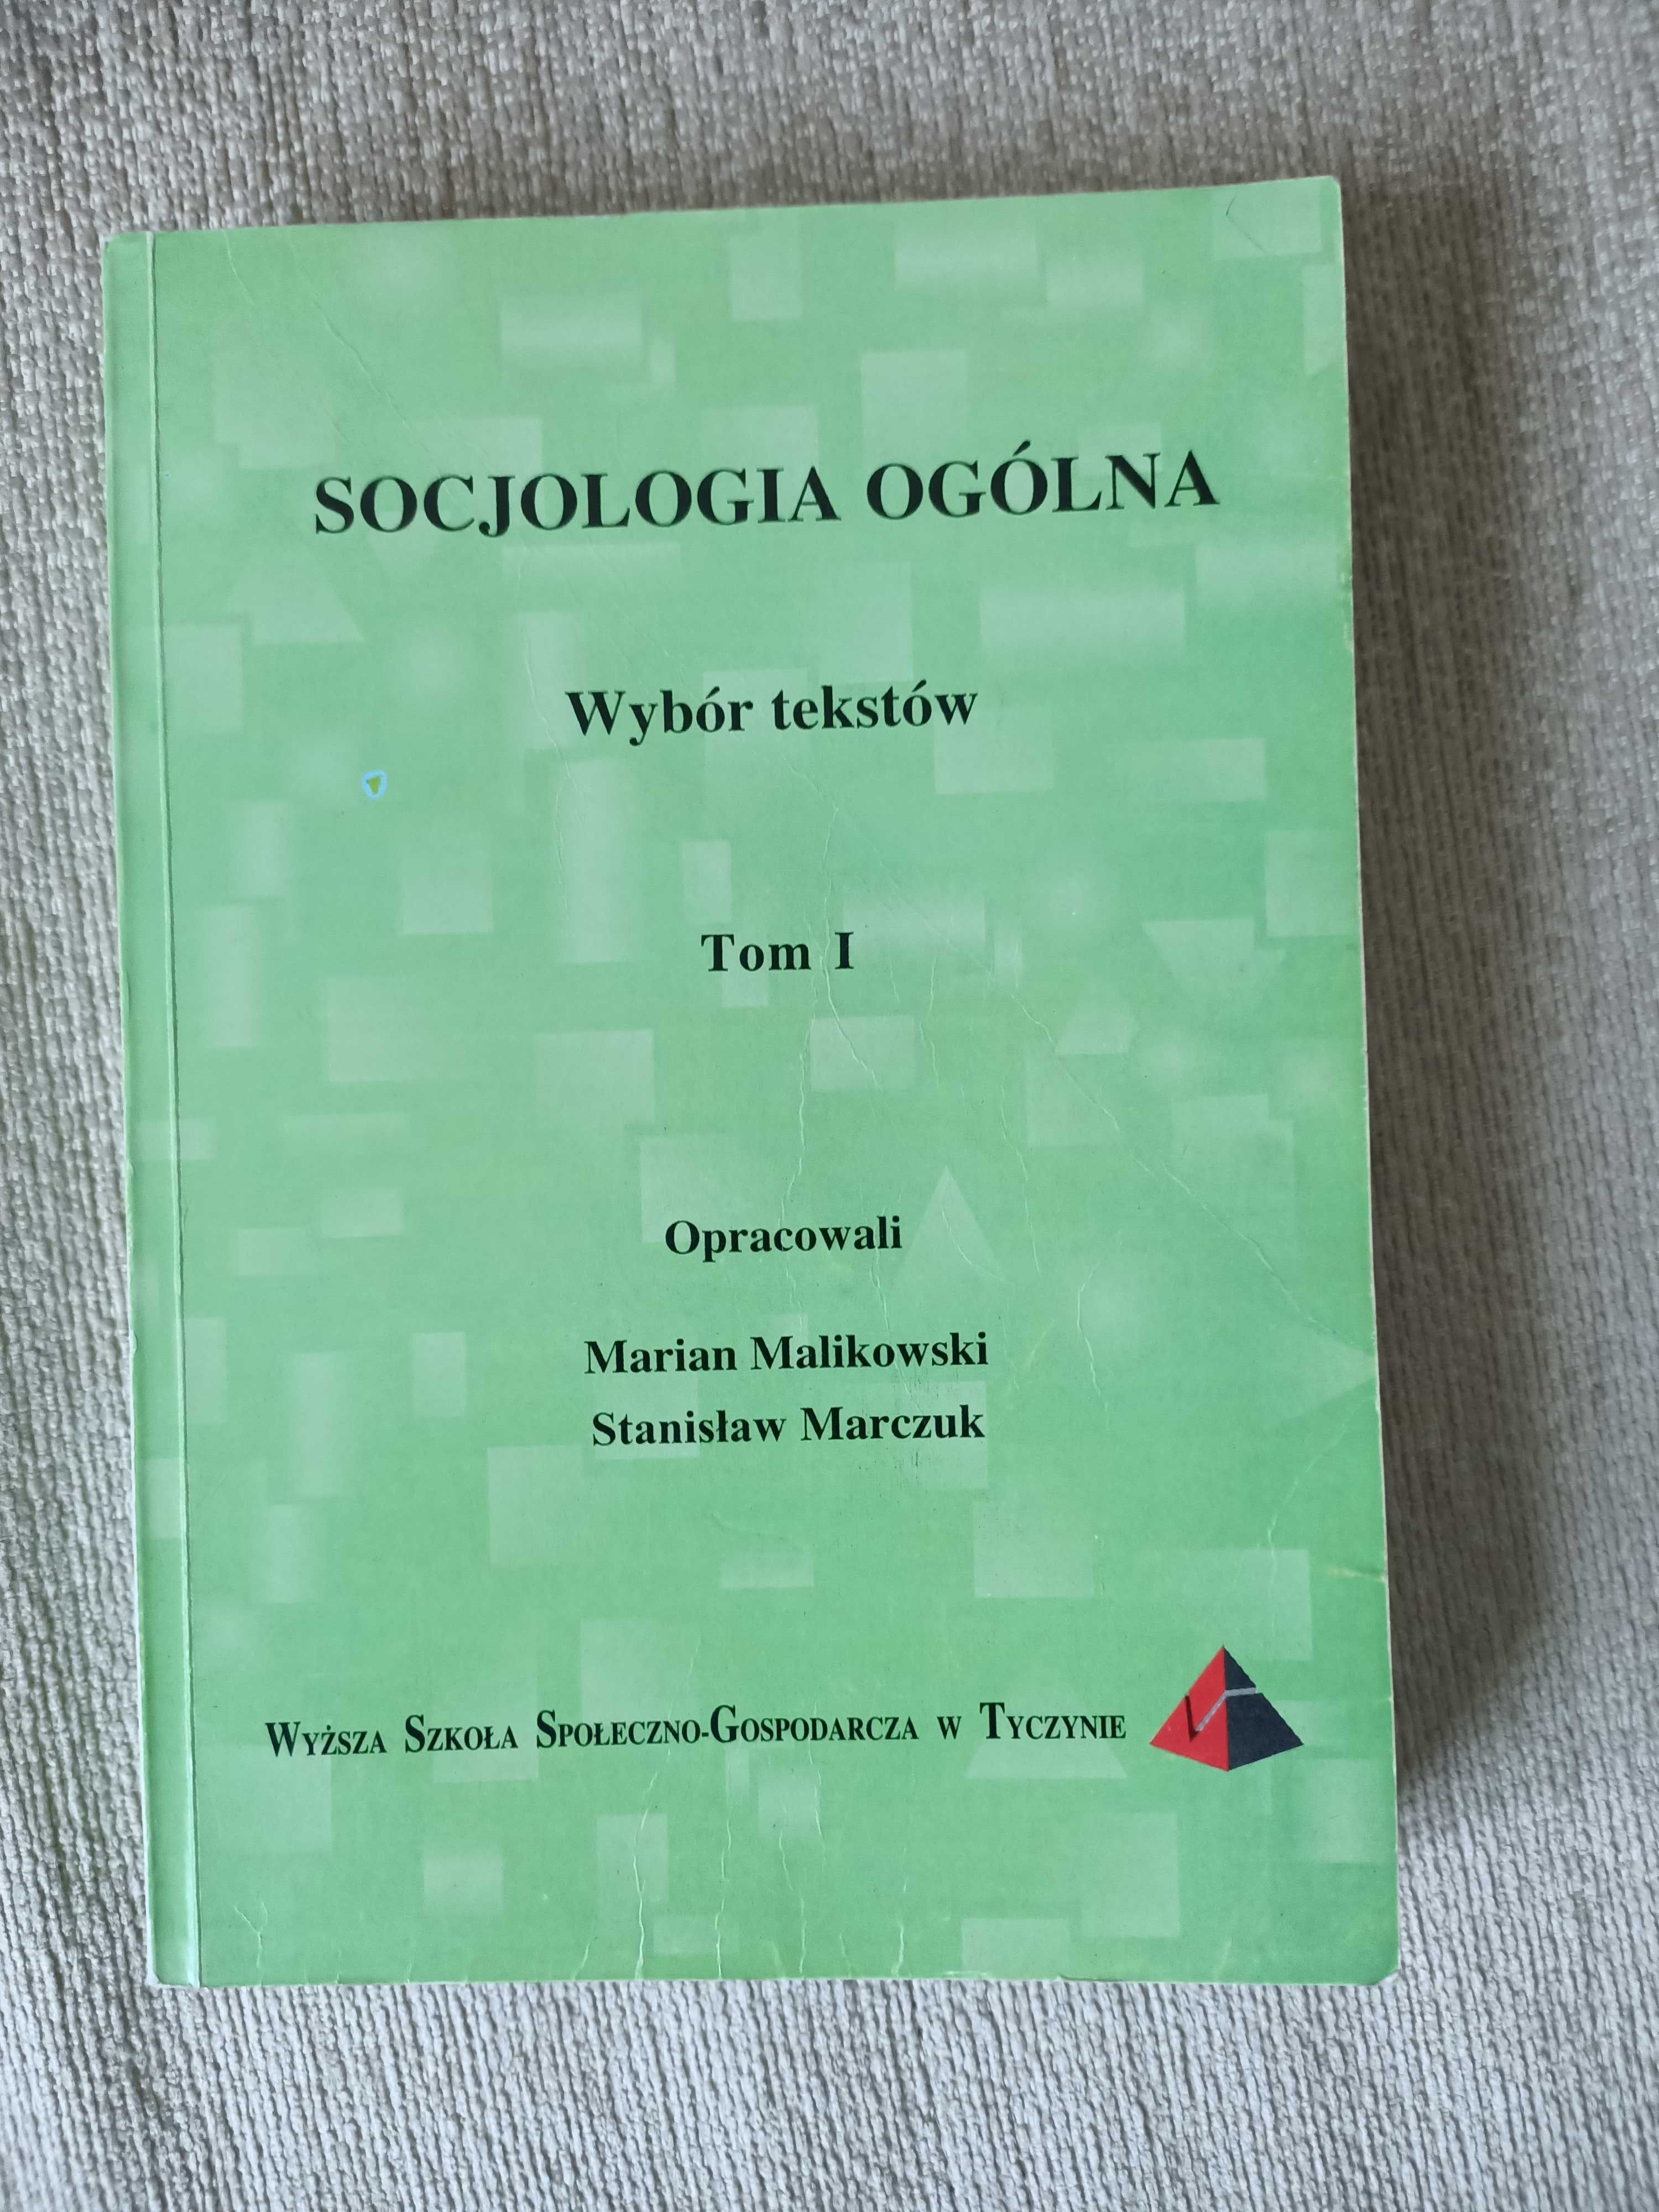 Socjologia Ogólna, wybór tekstów, Malinowski,Marczuk